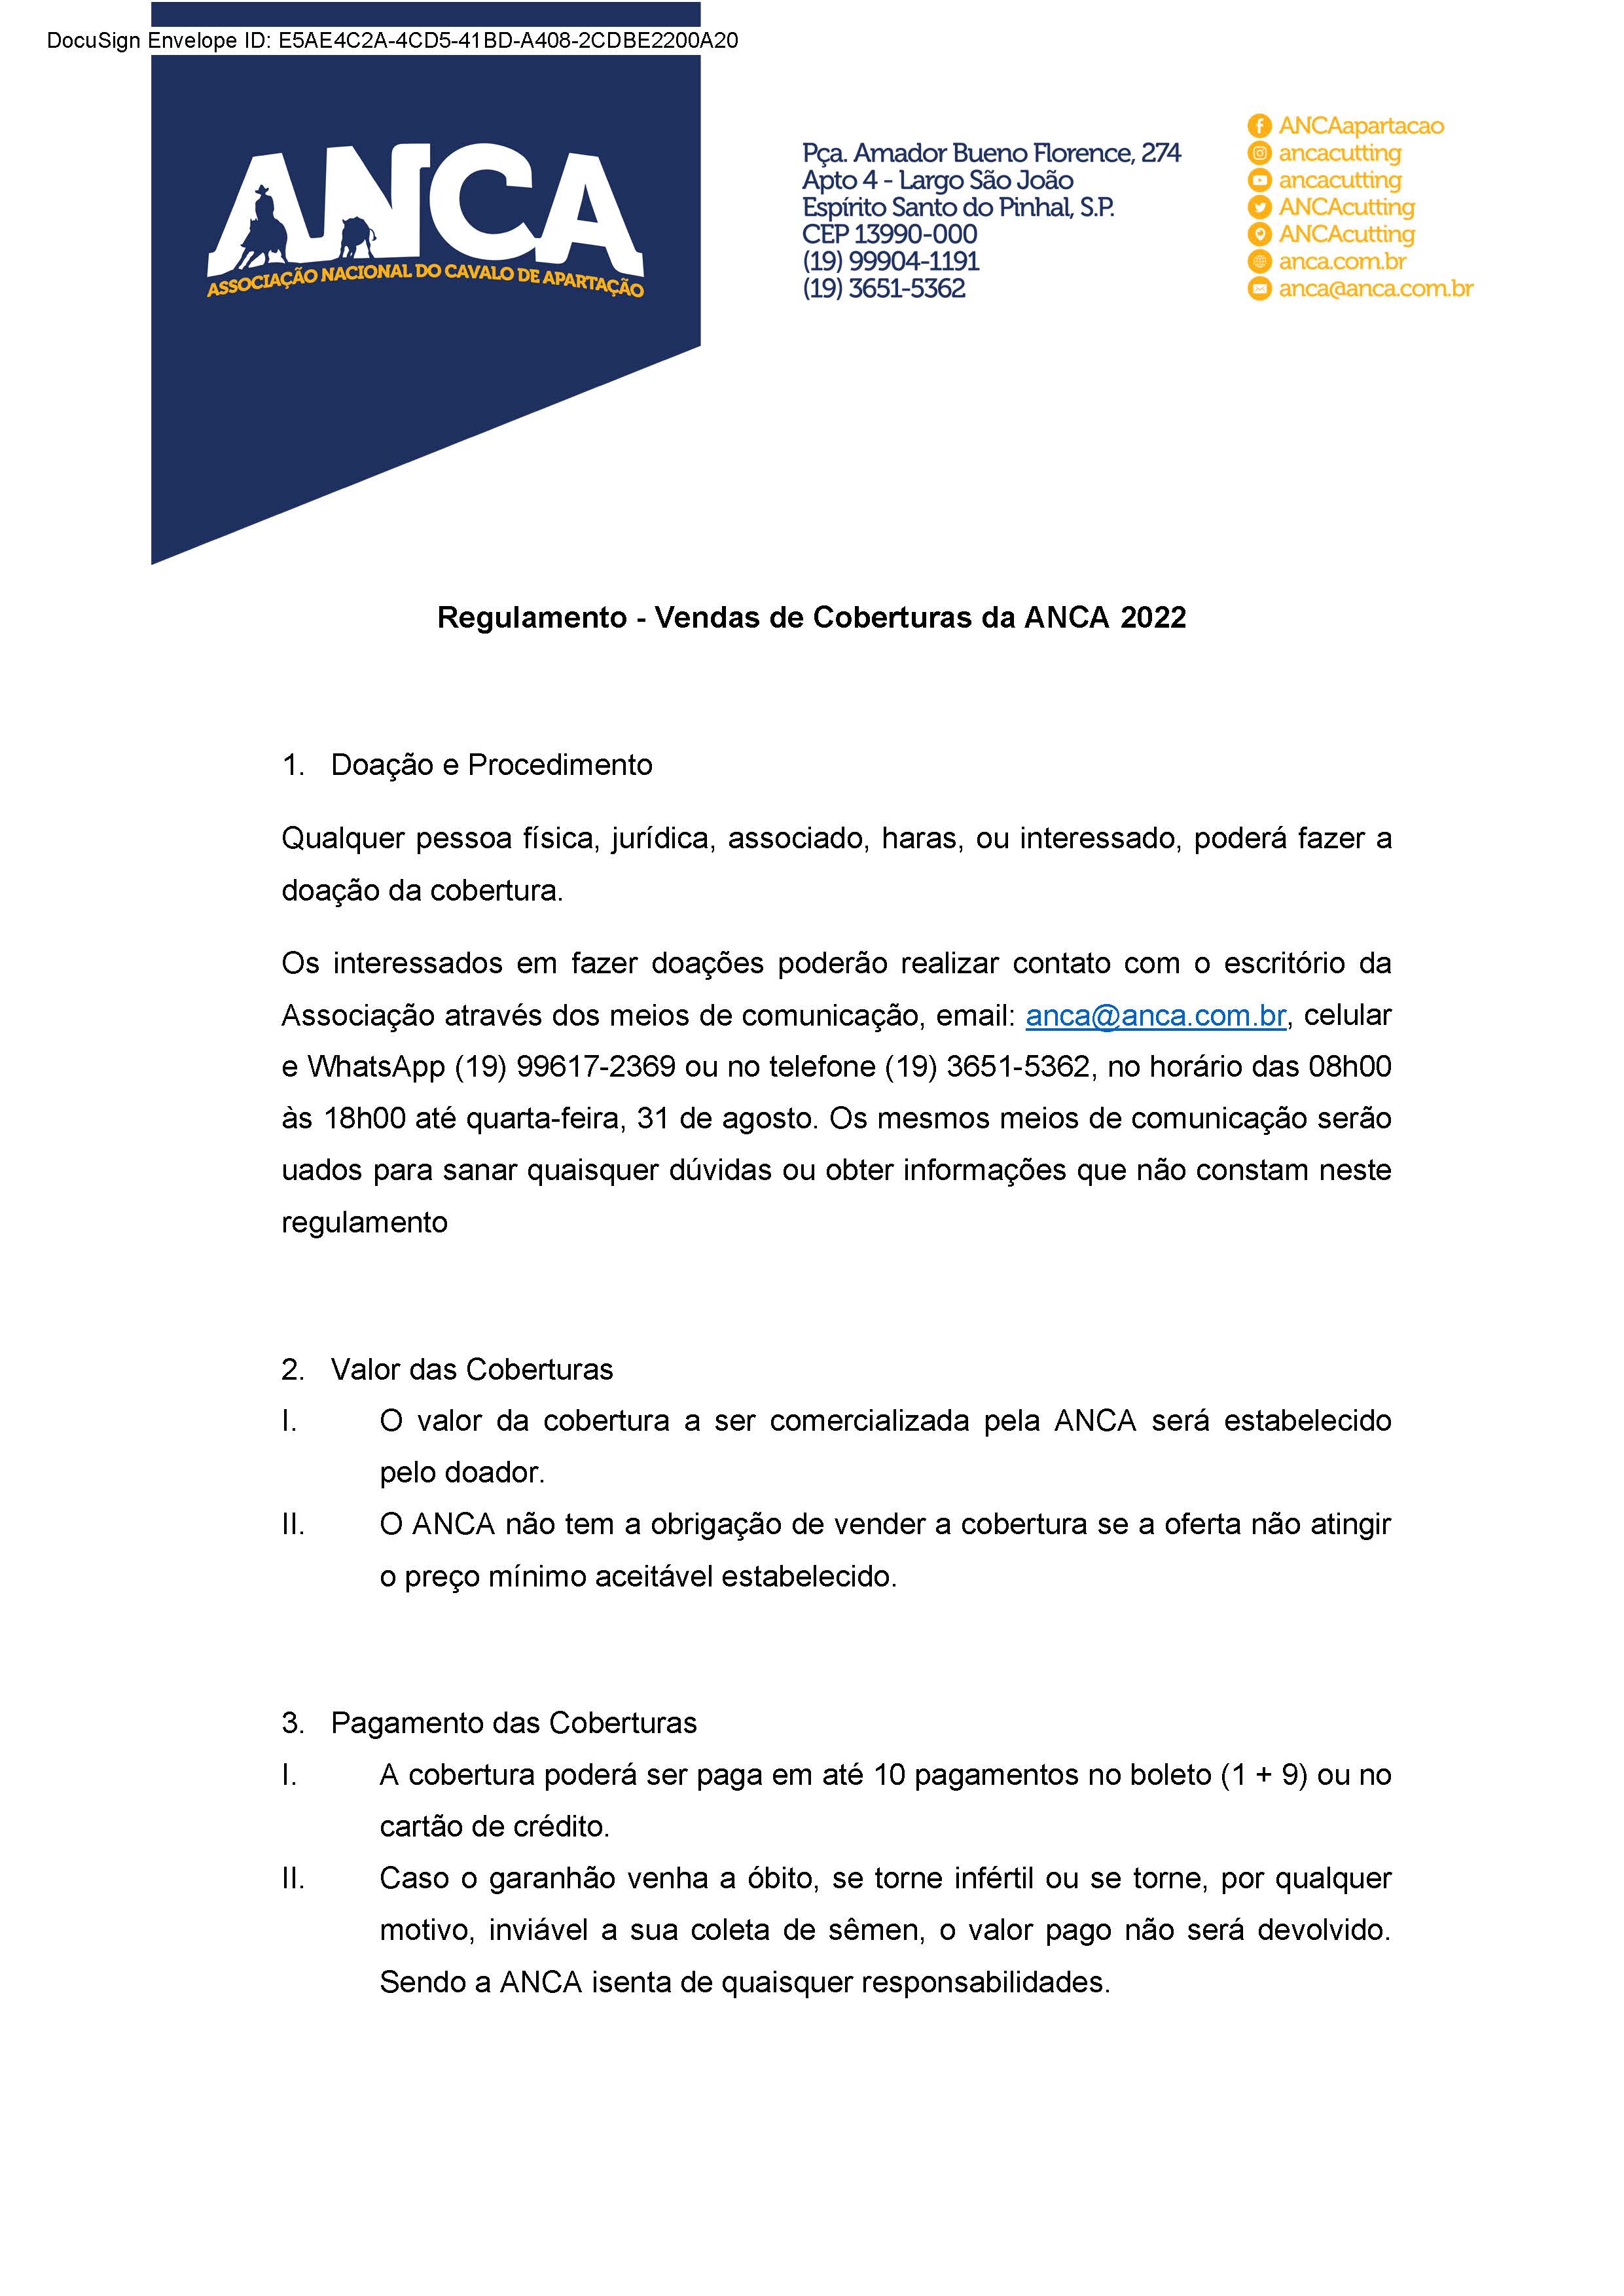 Regulamento - Vendas de Coberturas da ANCA 2022 (Oficial) Página 1